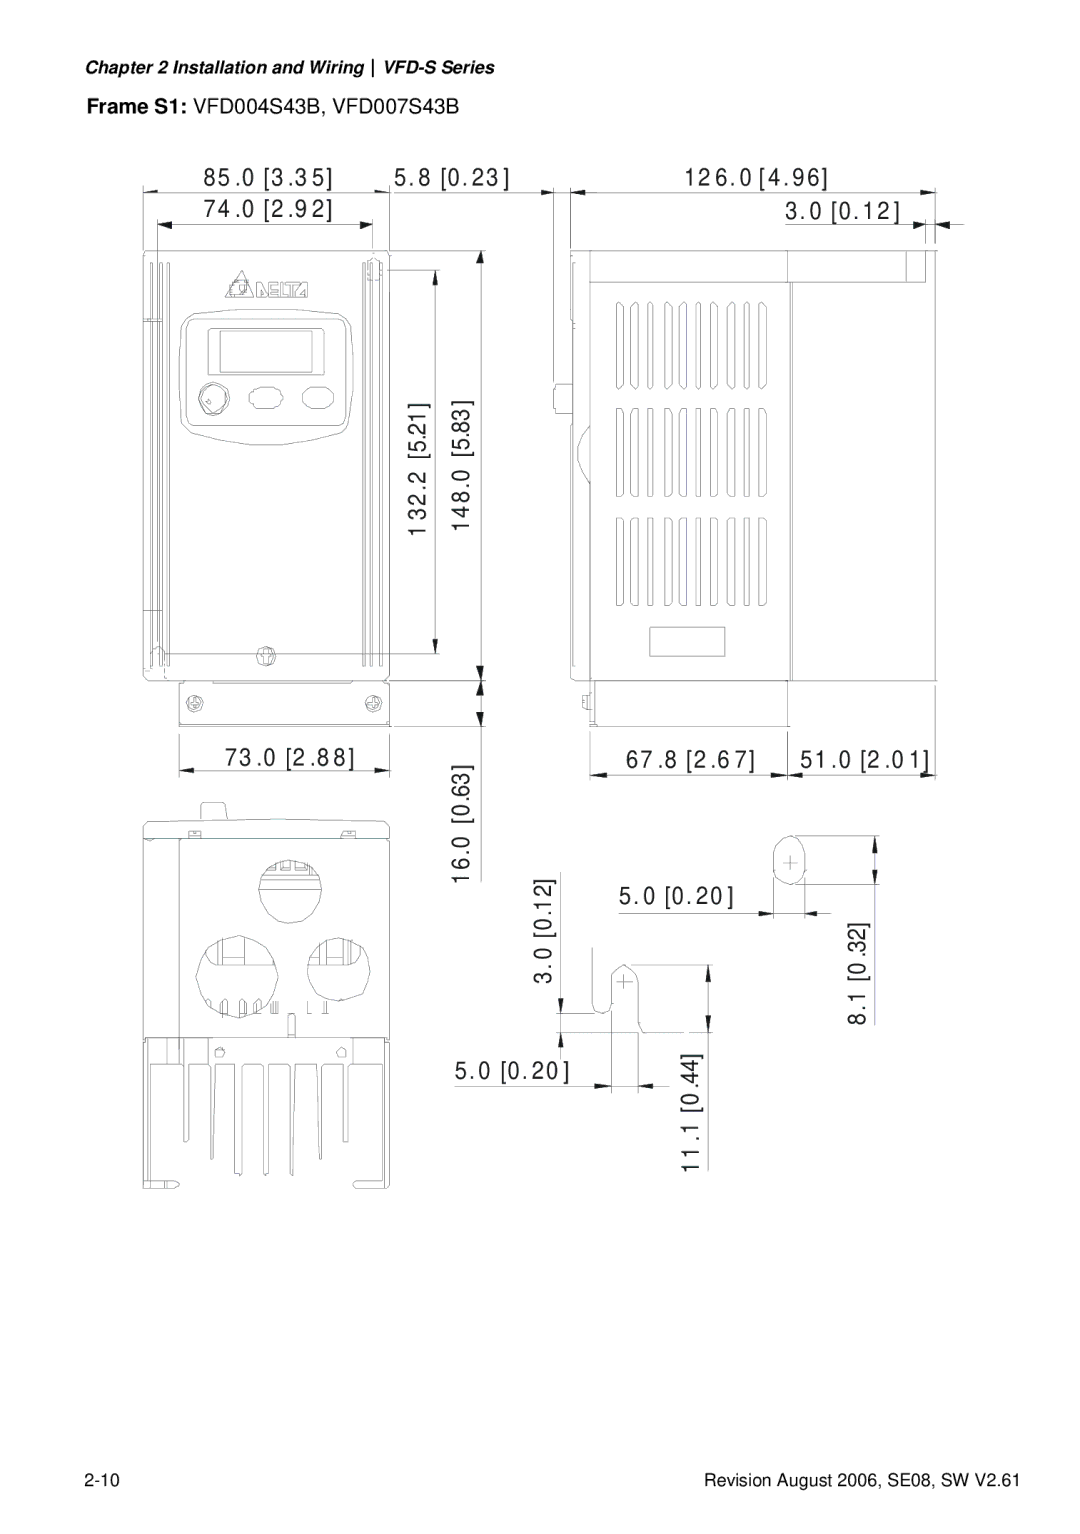 Delta Electronics VFD007S23A manual 67 .8 2 .6 51 .0 2 .0 